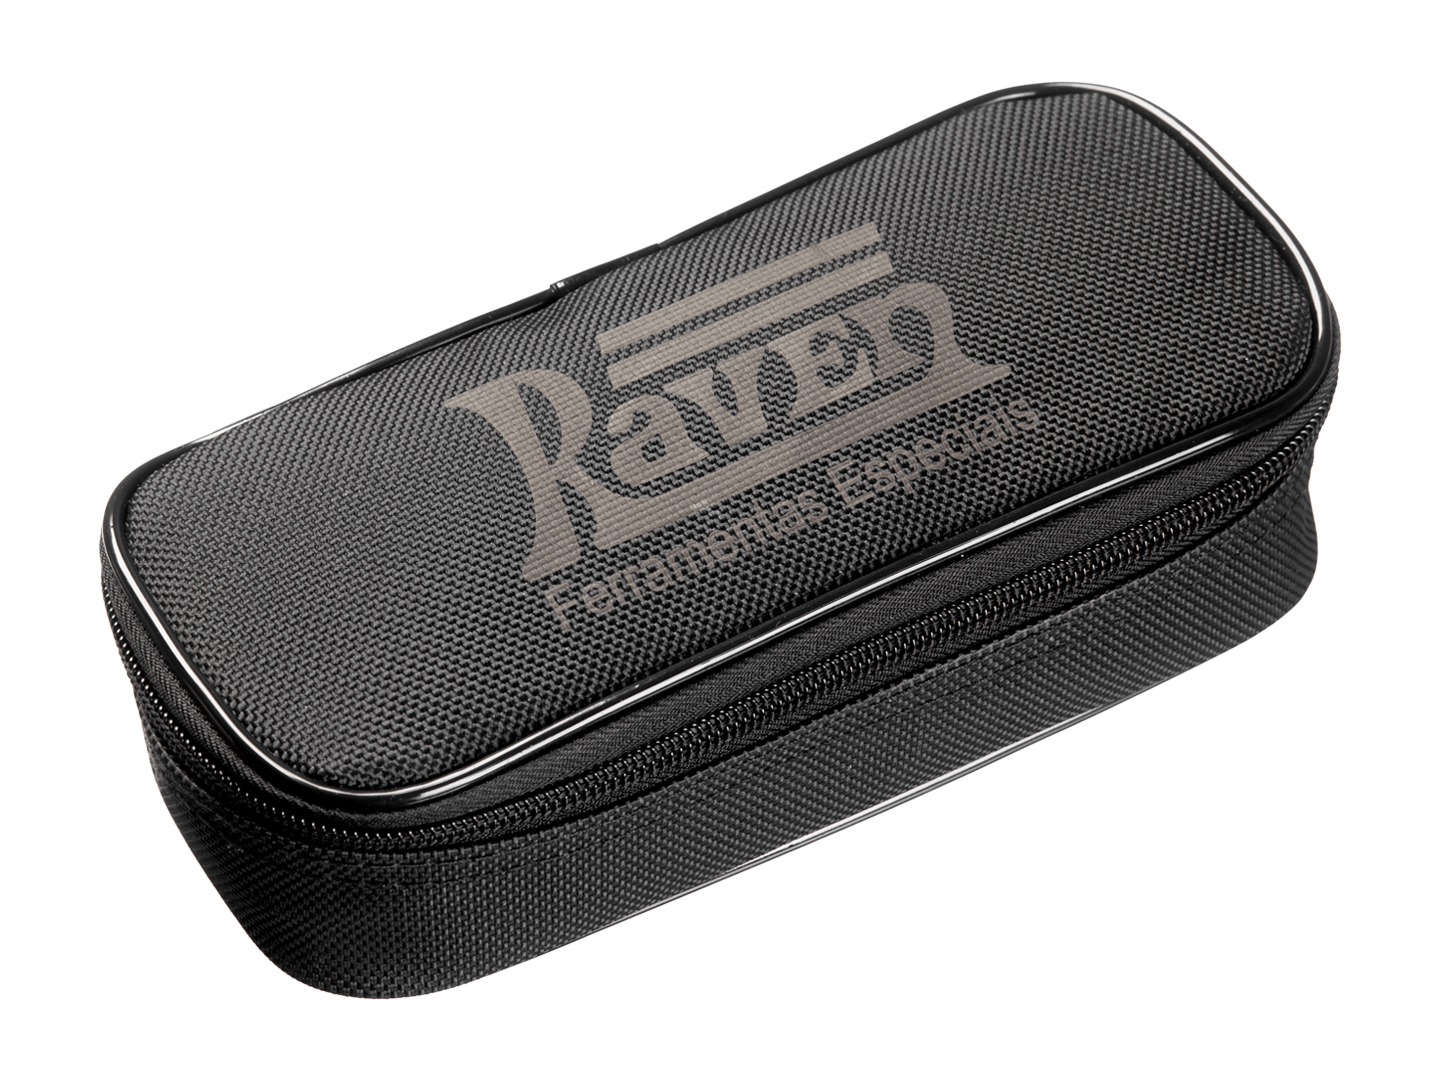 Produto Raven 108907 - Pinça amperimétrica acessória do Scanner 3 Scope 108900 / 901 para leituras de 0A a 20A e 0A a 80A (AC / DC) em cabos com espessura de até 12,5mm. Produto fornecido em um estojo de tecido.<ul></ul> - Elétrica